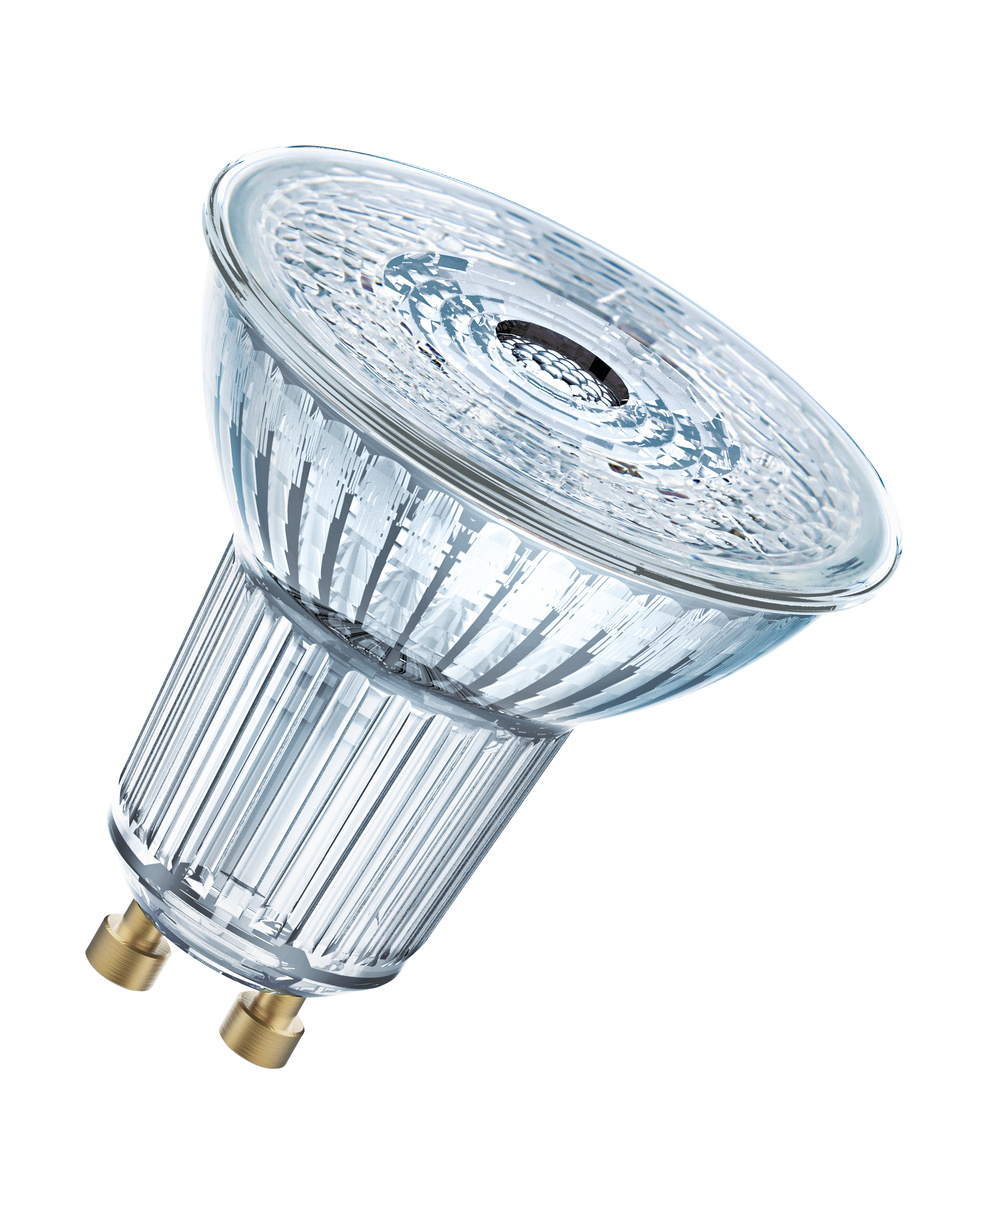 Ledvance LED lamp LED PAR16 P 4.3W 840 GU10 – 4099854068010 – replacement for 50 W - 4099854068010